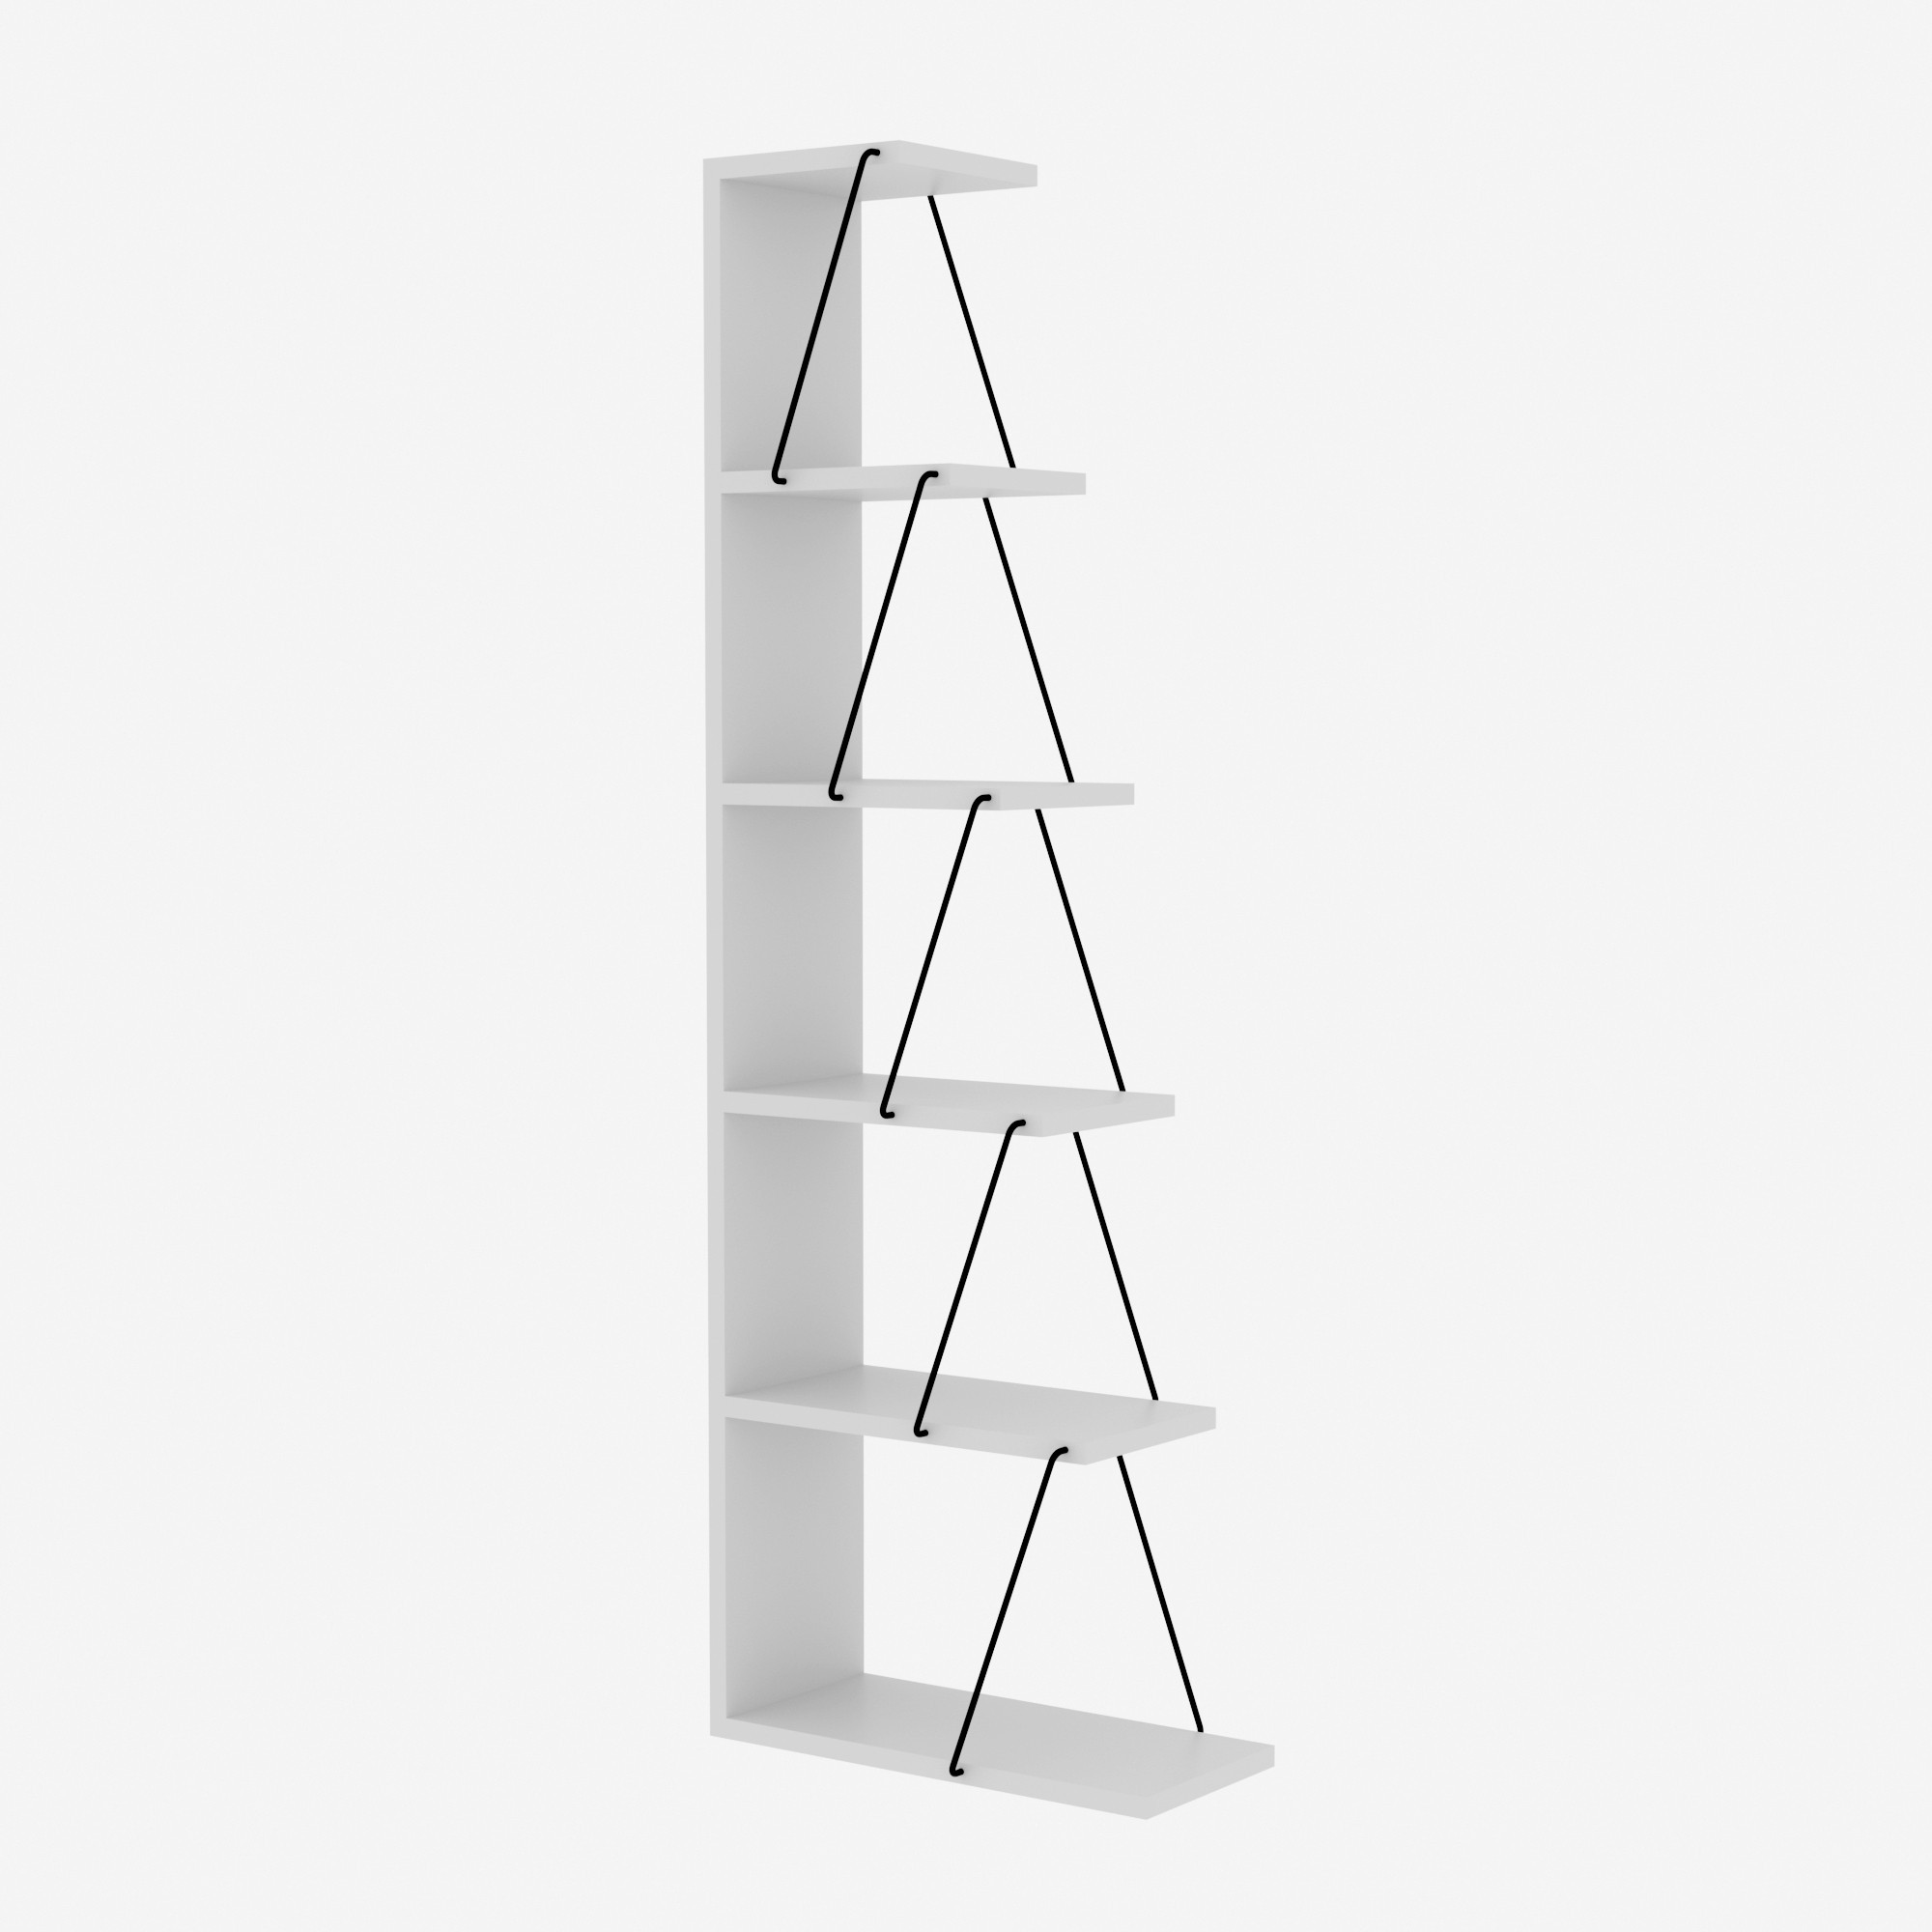 фото Стеллаж - этажерка напольный вертикальный, uvi collection 854kln3607, белый 50x150x22 см